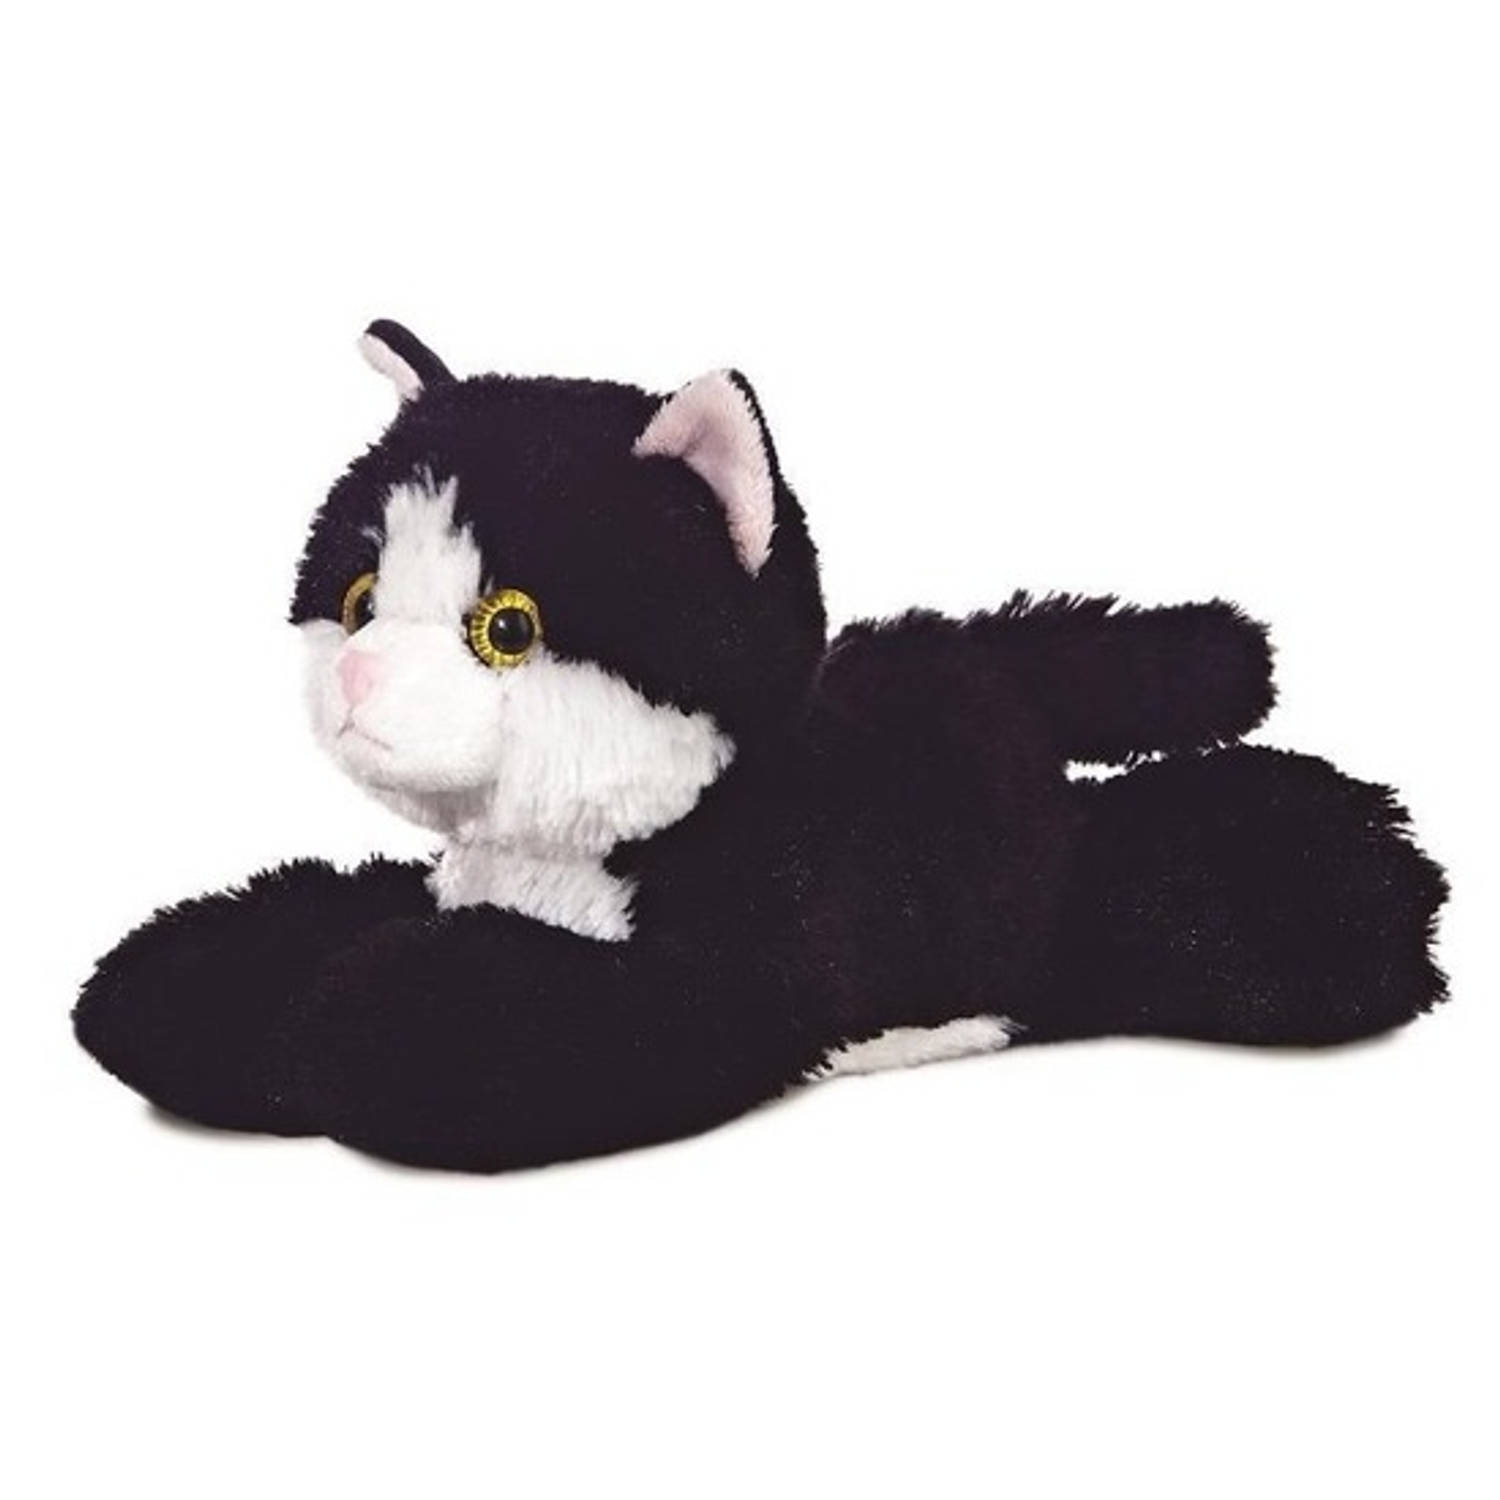 De volgende Dokter Droogte Pluche zwart/witte kat/poes knuffel 20 cm - Poezen/katten huisdieren  knuffels - Speelgoed voor peuters/kinderen | Blokker